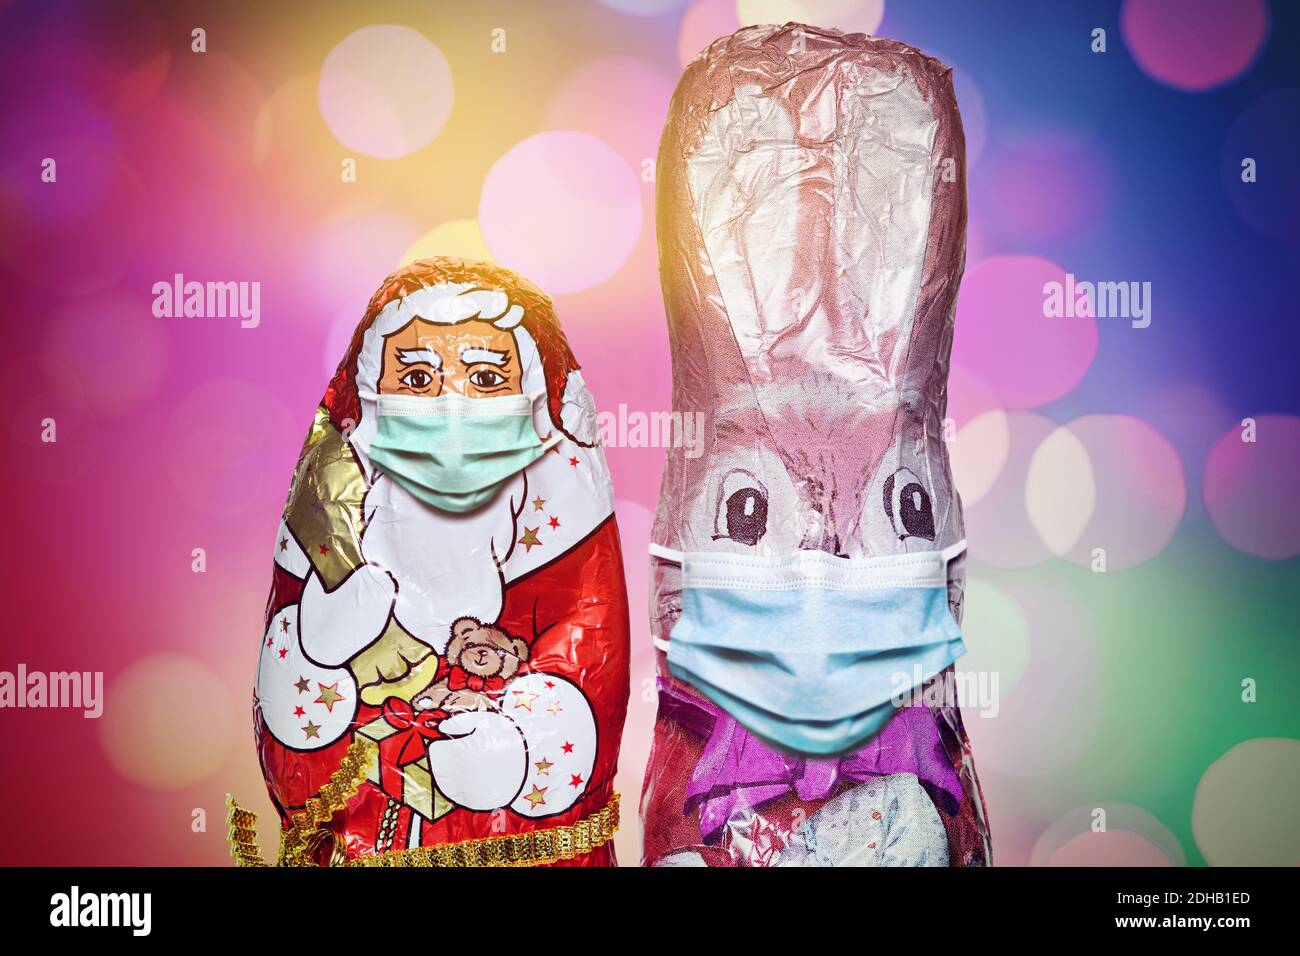 FOTOMONTAGE, Schoko-Weihnachtsmann und Schoko-Osterhase mit Schutzmaske, Weihnachtsfest zu Corona-Zeiten und Corona-Beschränkungen Stock Photo